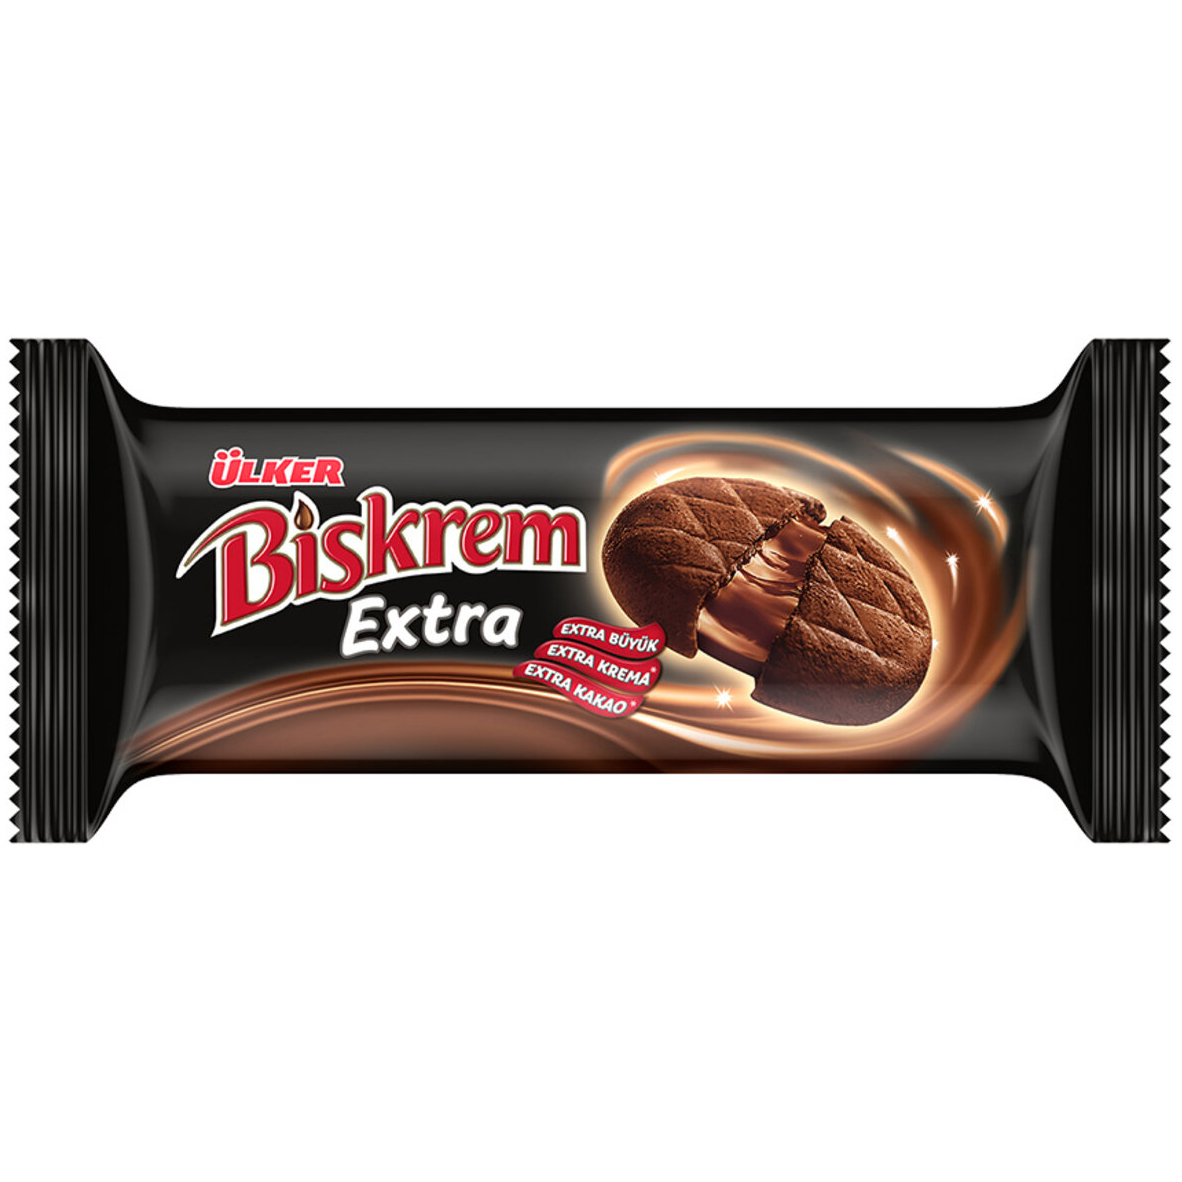 Печенье Ulker Biskrem Extra, 184 г печенье ulker biskrem cocoa 180 г